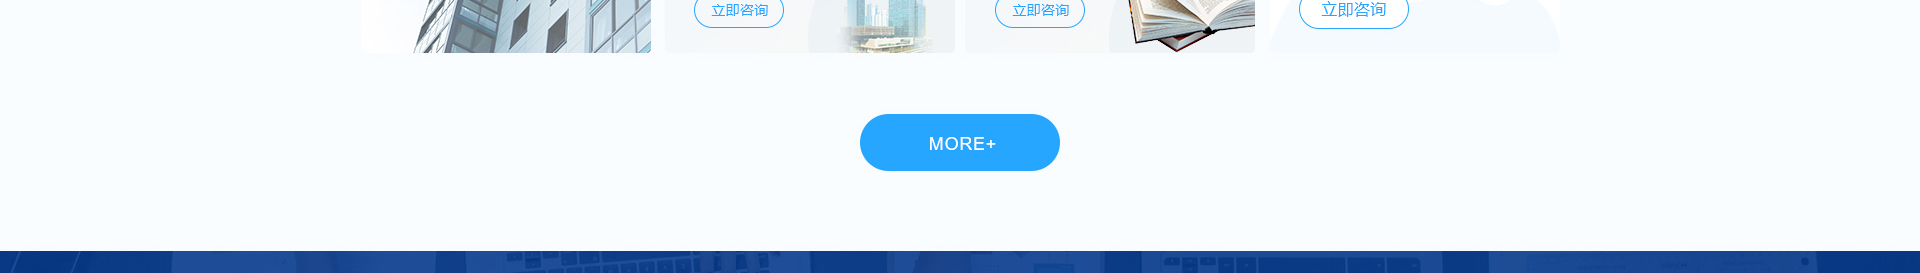 深圳市财通财务有限公司_企业网站设计案例_财税网站